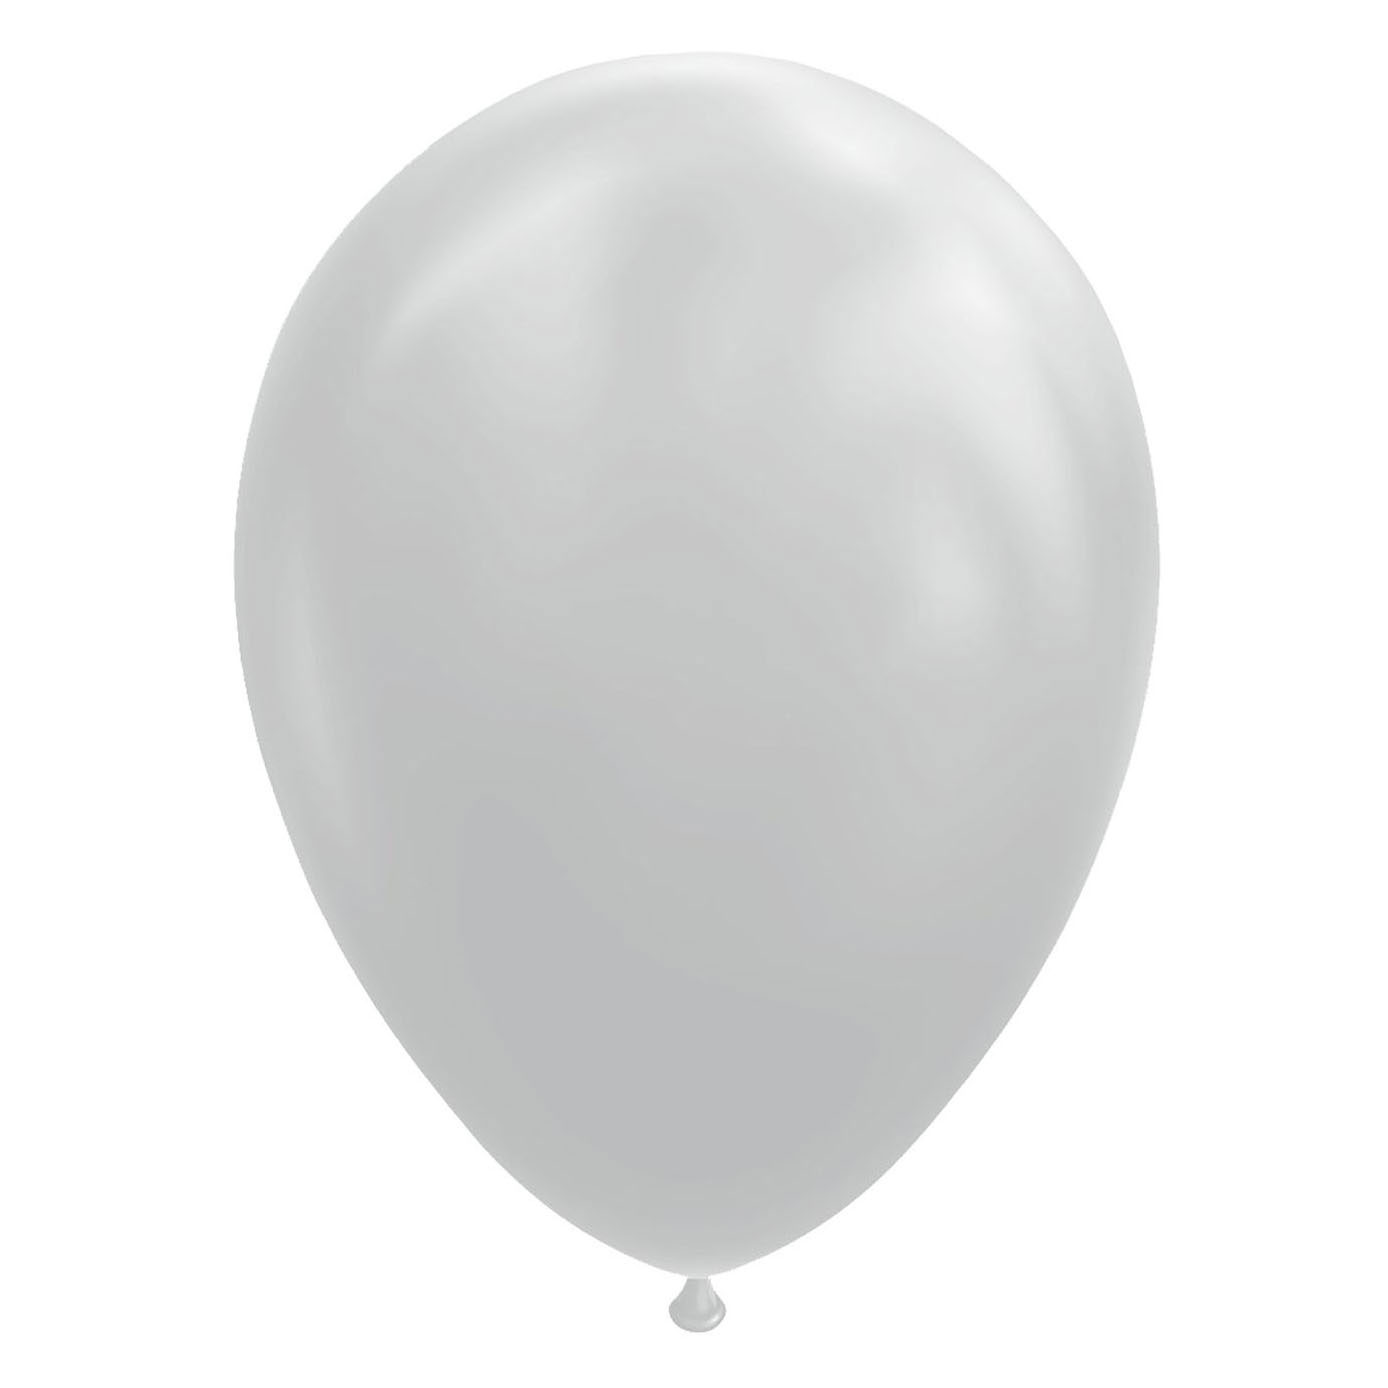 Globos Ballonnen Cool Grijs, 30cm, 10st.